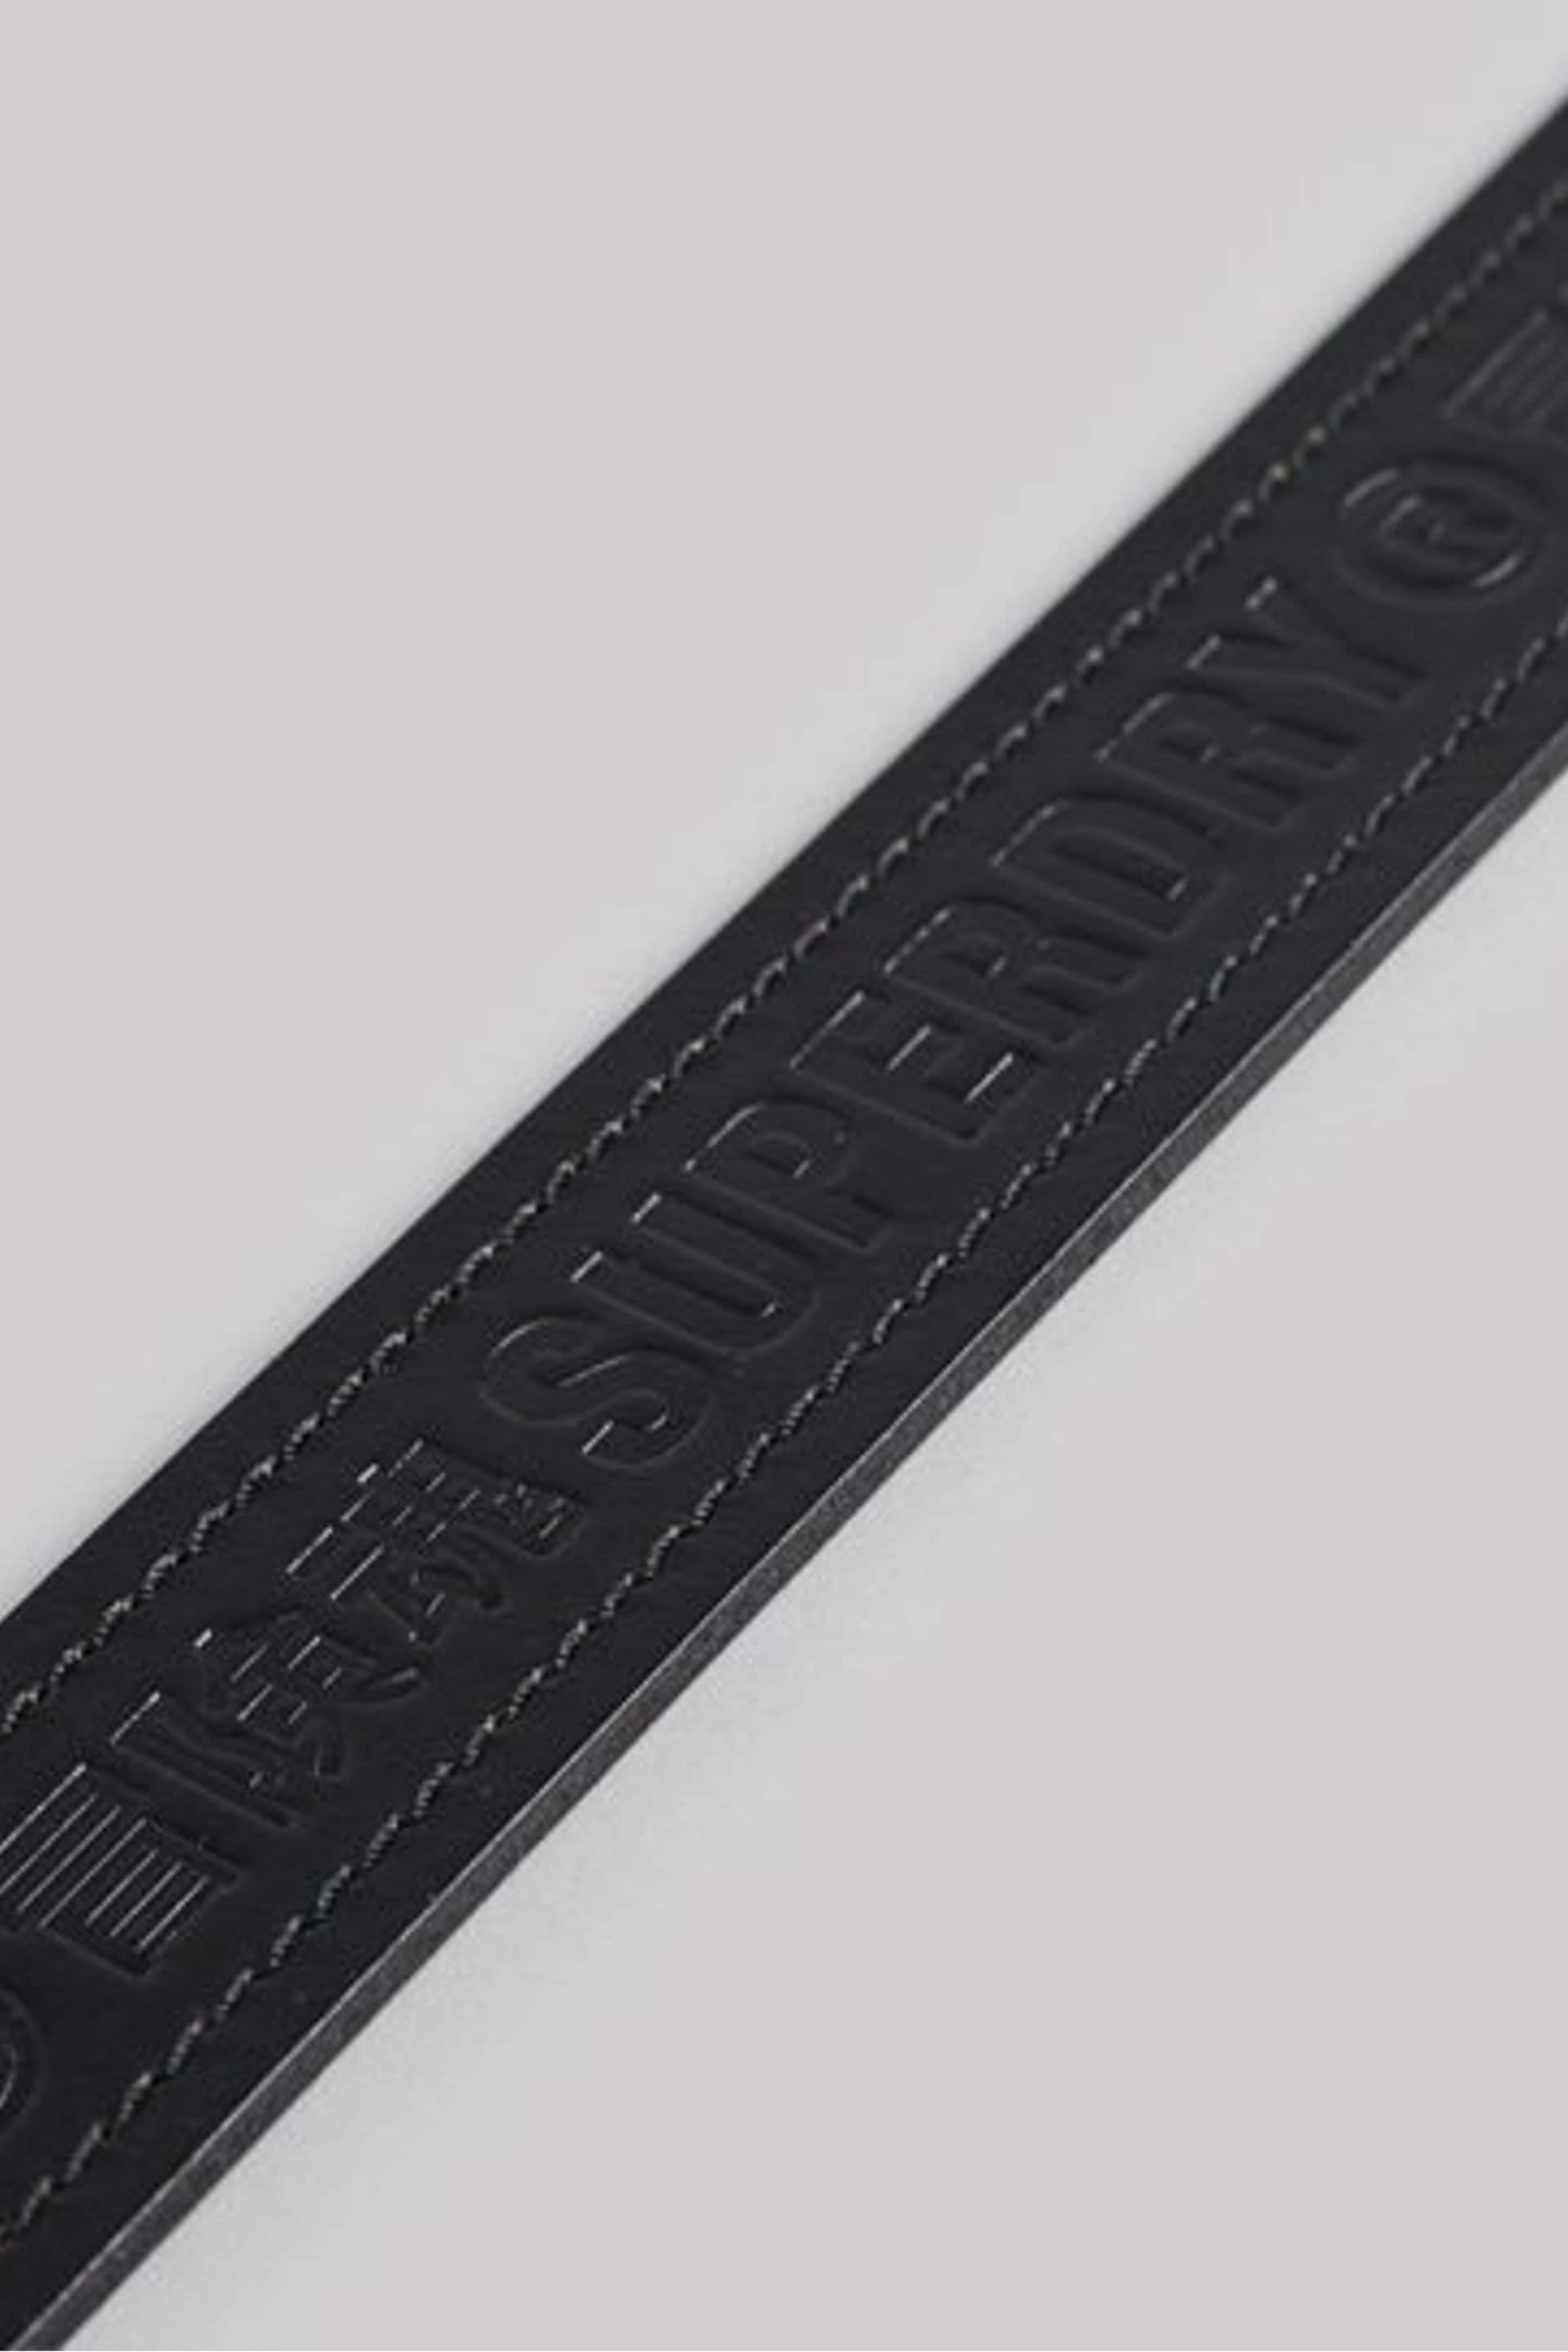 Superdry Dark Black Vintage Branded Belt - Image 4 of 4